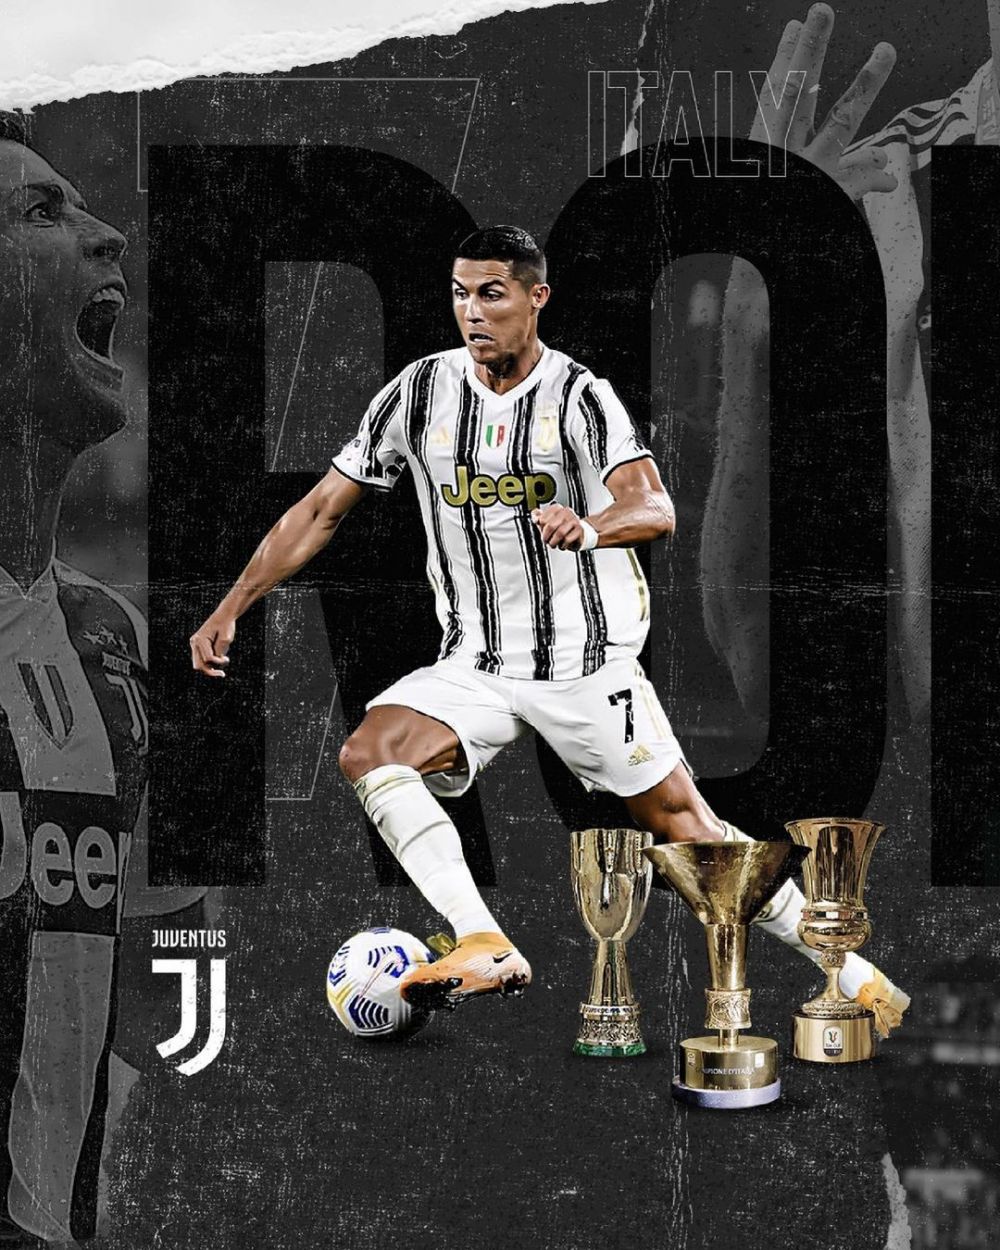 "Mi-am atins obiectivele la Juventus!" Postarea lui Ronaldo care i-a pus pe fani in alerta! Ce a pus pe Instagram _7